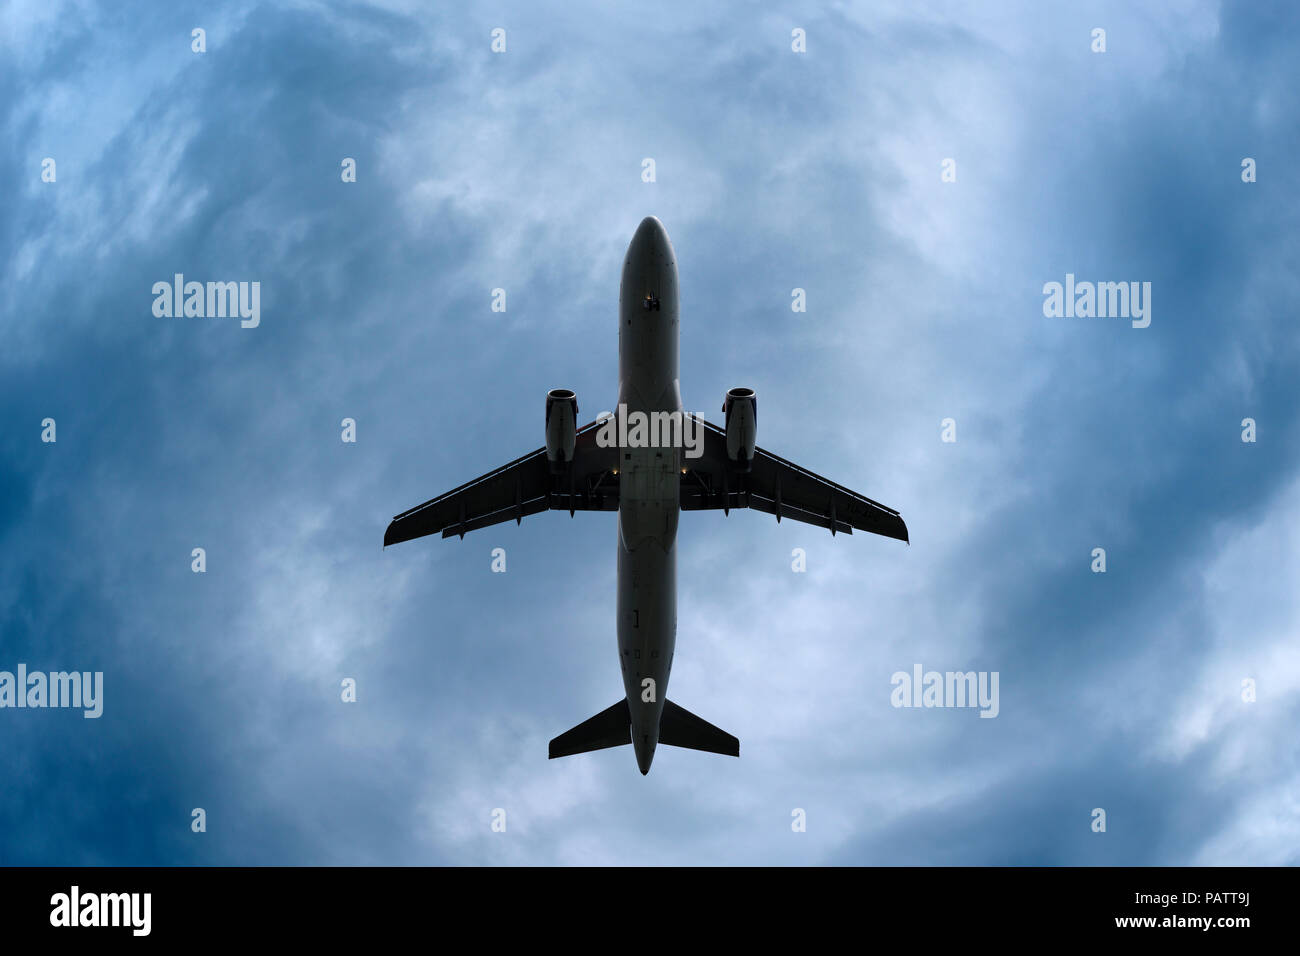 Aeroplano in un drammatico cielo tempestoso, angolo basso, Regno Unito Foto Stock